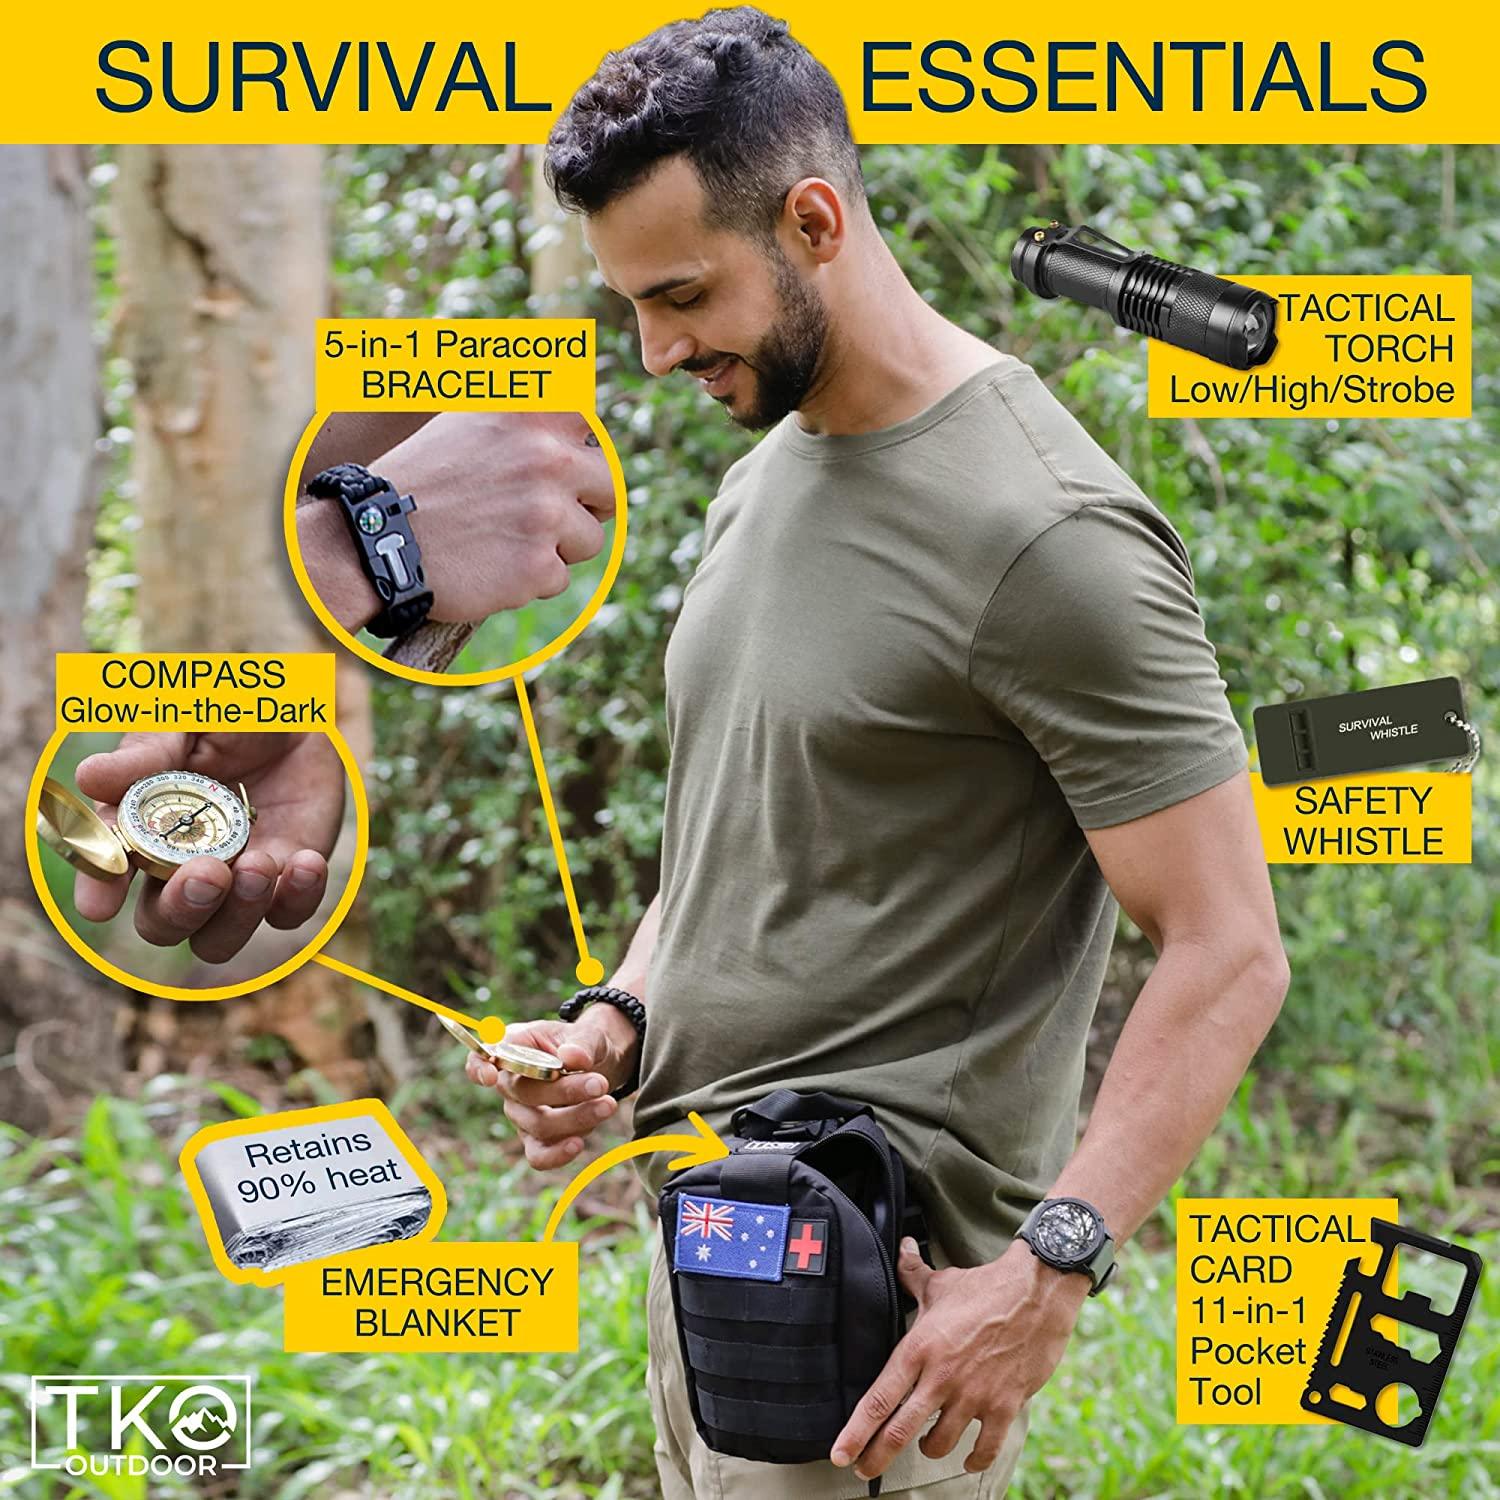  Survival Kit, Gifts for Men Dad Husband, Emergency